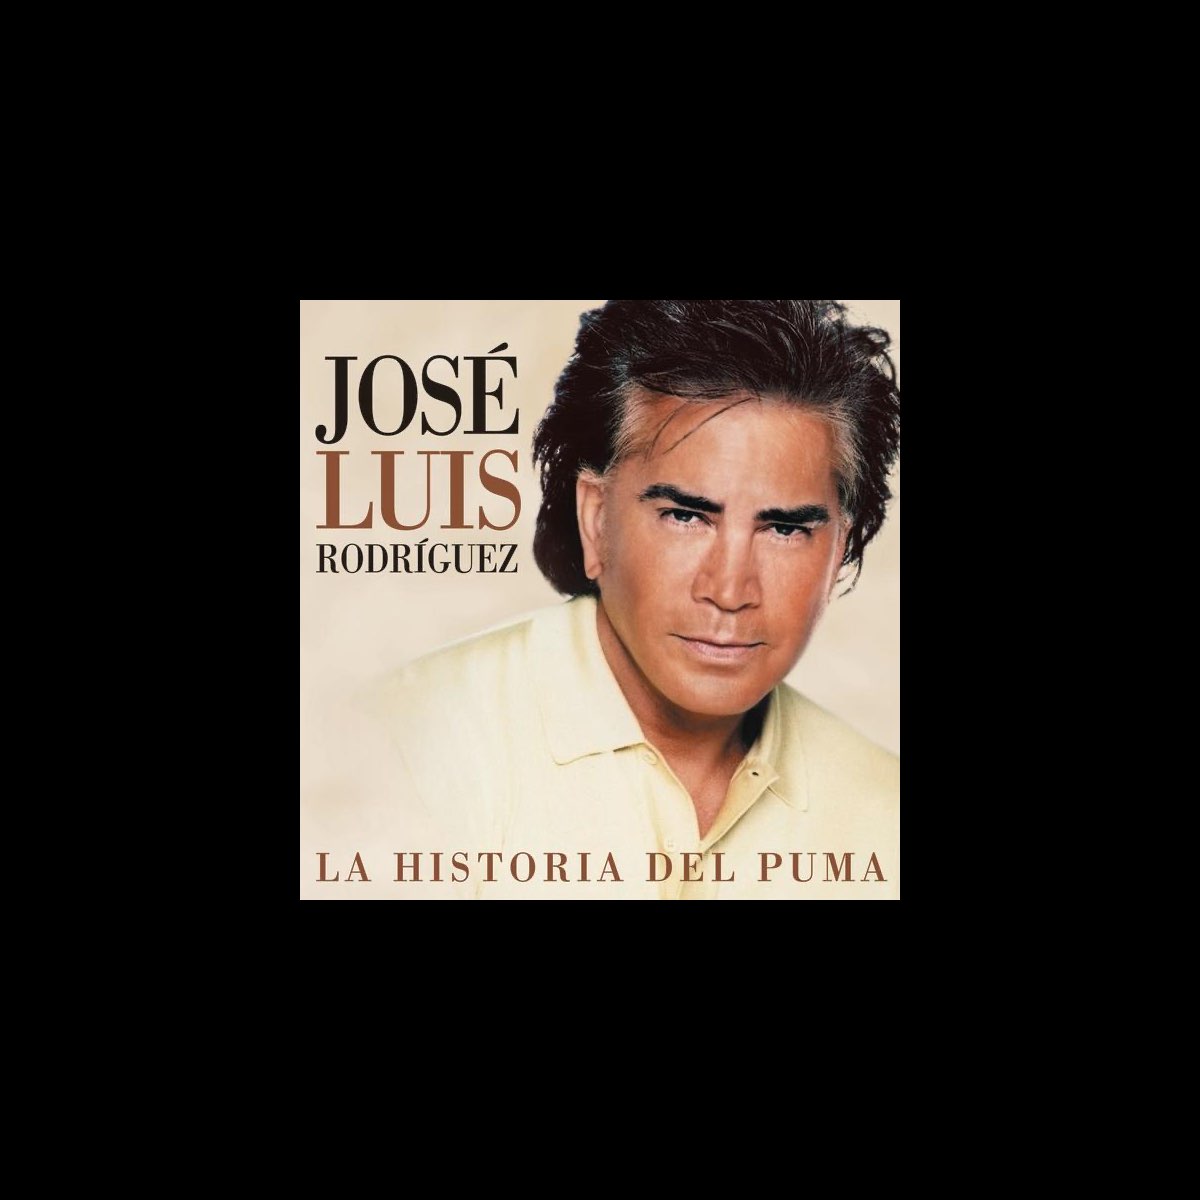 La Historia del Puma - Album by José Luis Rodríguez - Apple Music